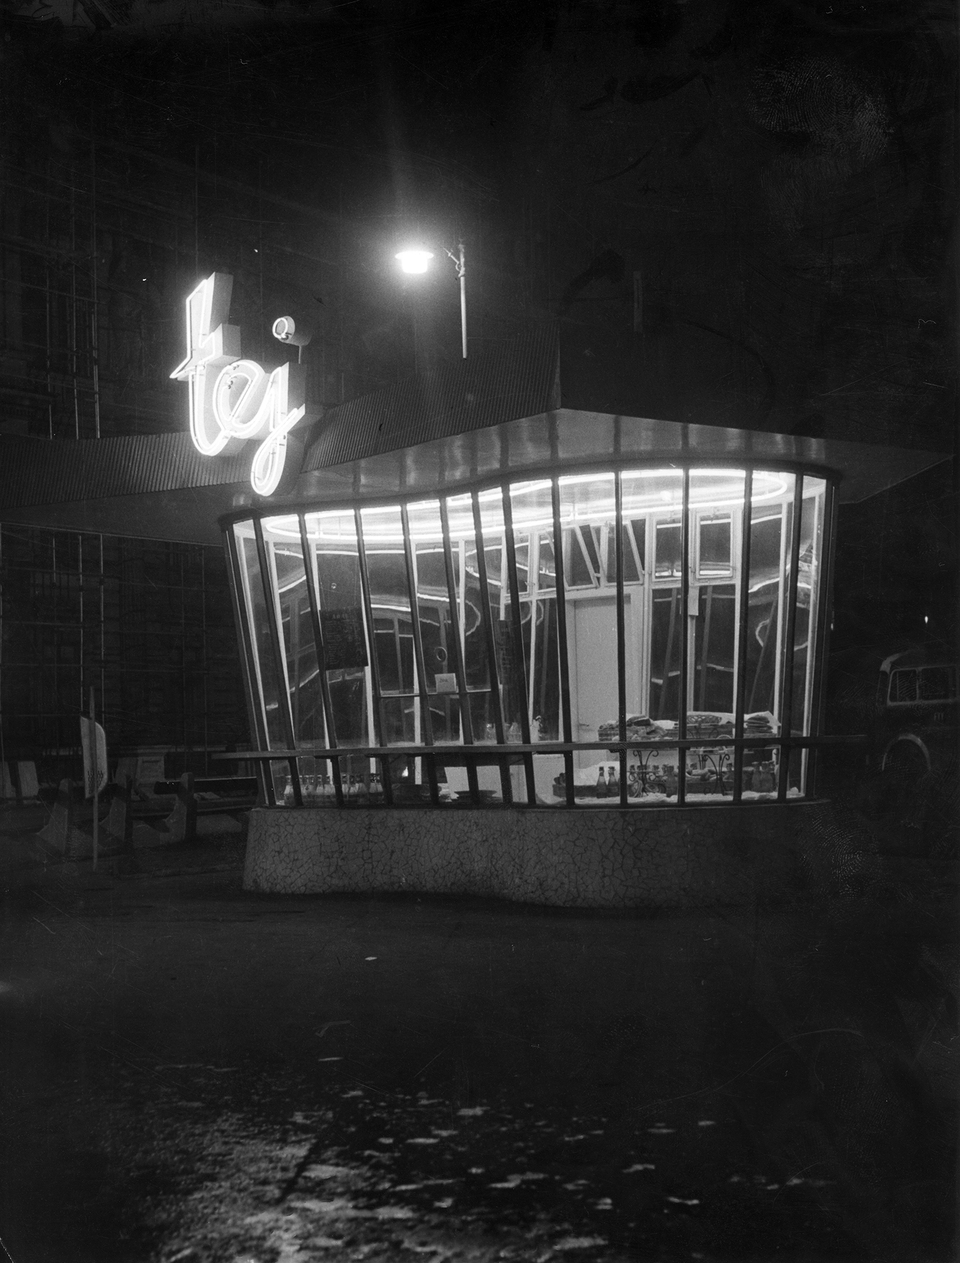 Nyugati (Marx) tér, tejivó pavilon. 1964. Fotó: Fortepan / Budapest Főváros Levéltára (levéltári jelzet: HU_BFL_XV_19_c_11)